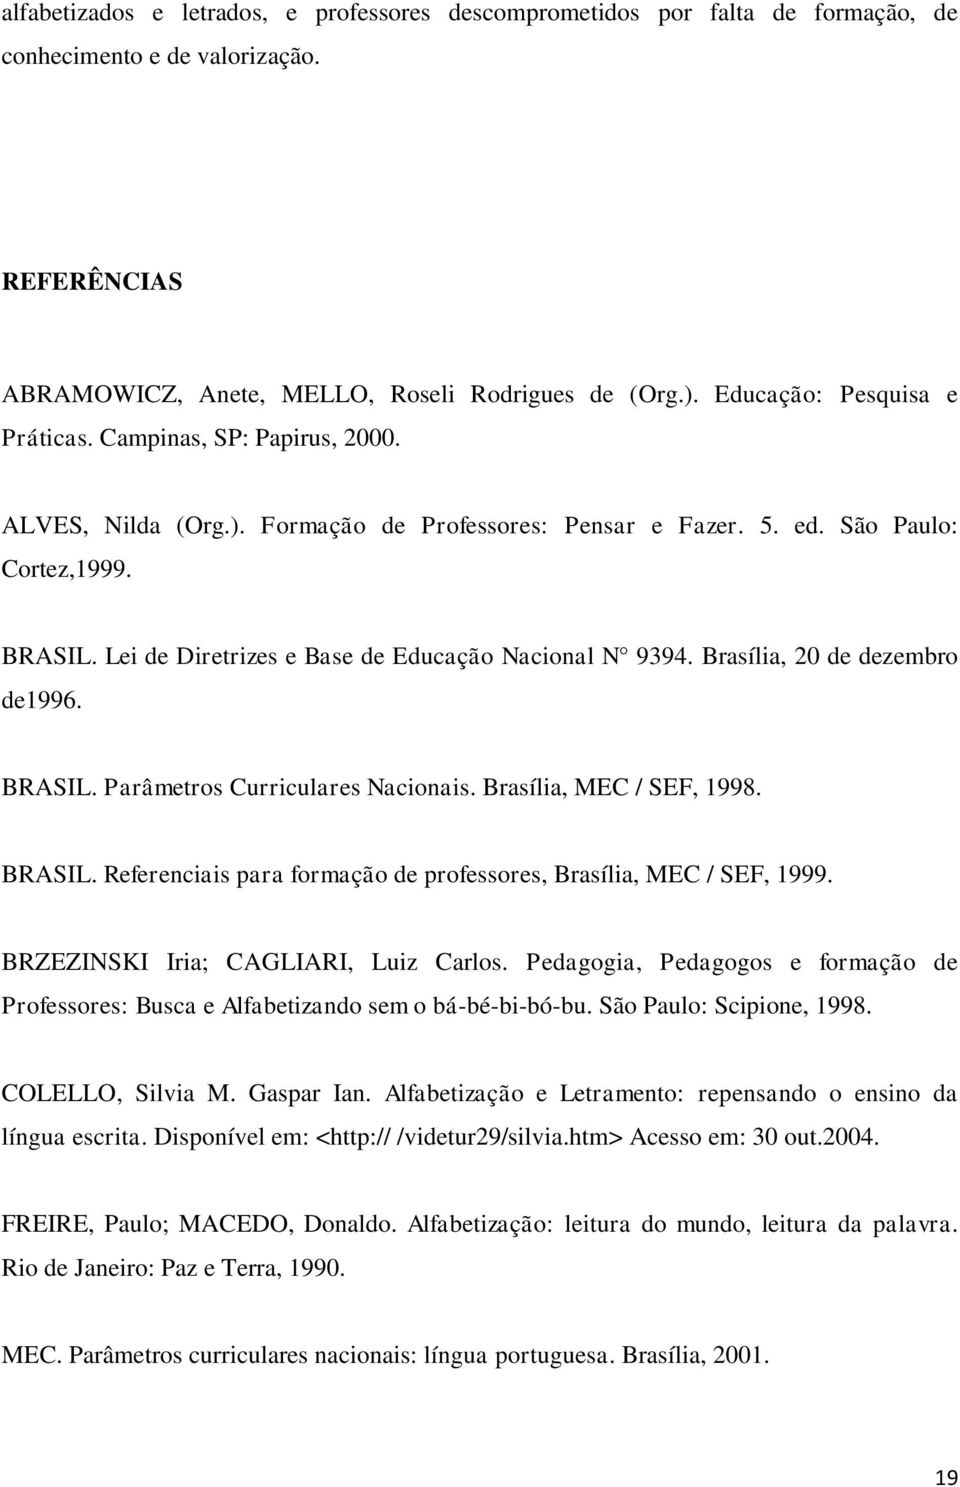 Lei de Diretrizes e Base de Educação Nacional N 9394. Brasília, 20 de dezembro de1996. BRASIL. Parâmetros Curriculares Nacionais. Brasília, MEC / SEF, 1998. BRASIL. Referenciais para formação de professores, Brasília, MEC / SEF, 1999.